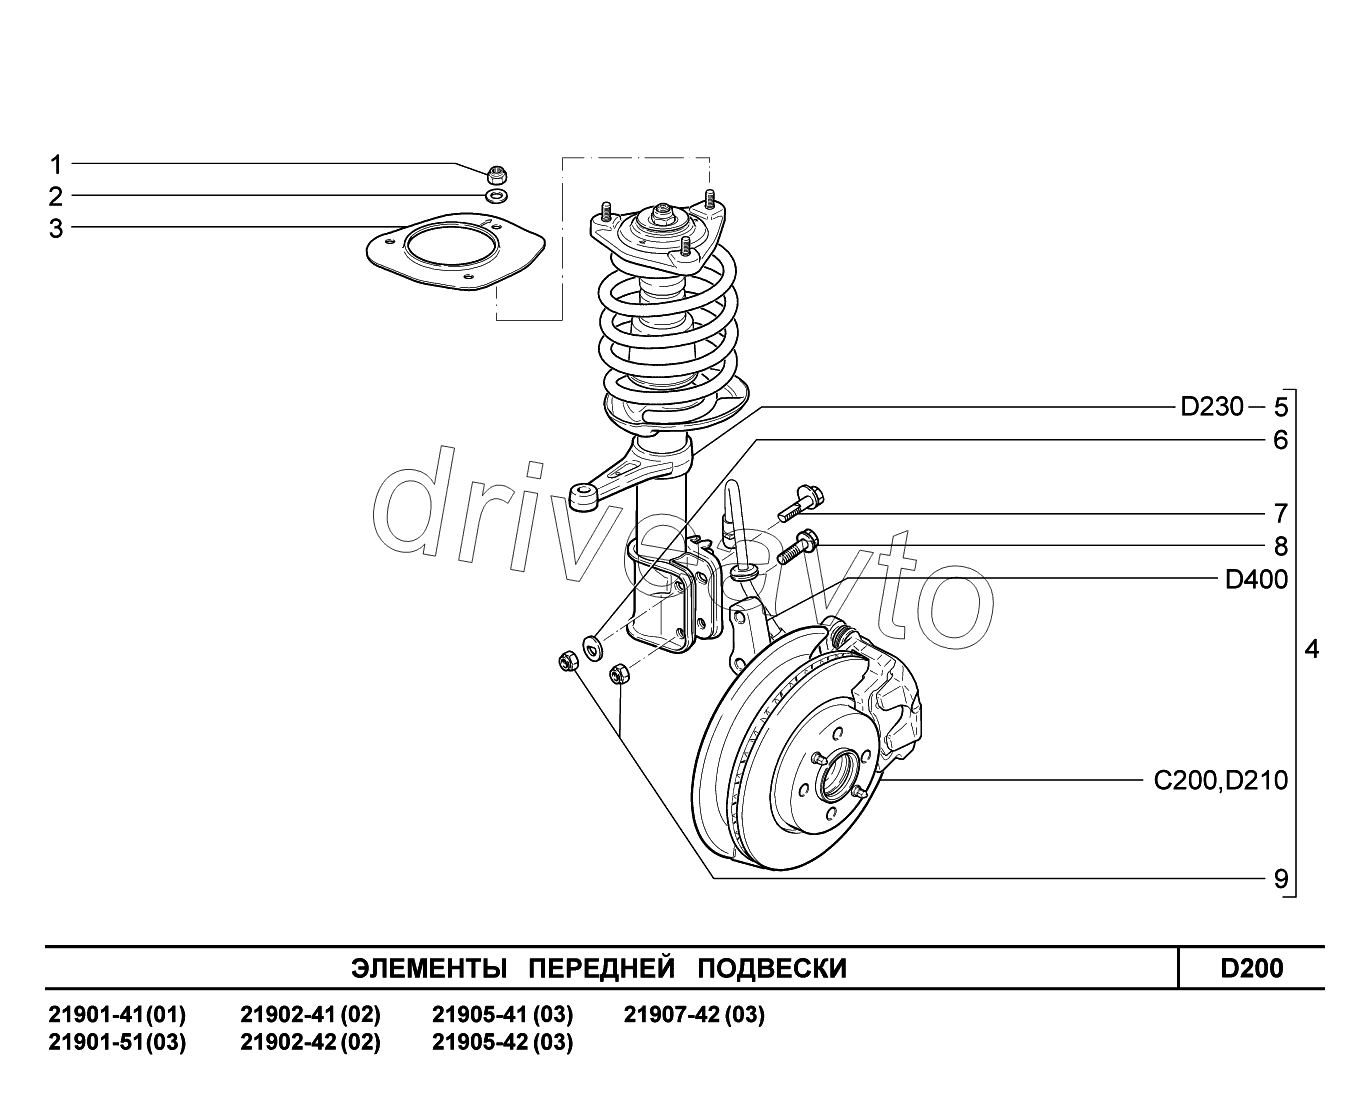 D200. Элементы передней подвески